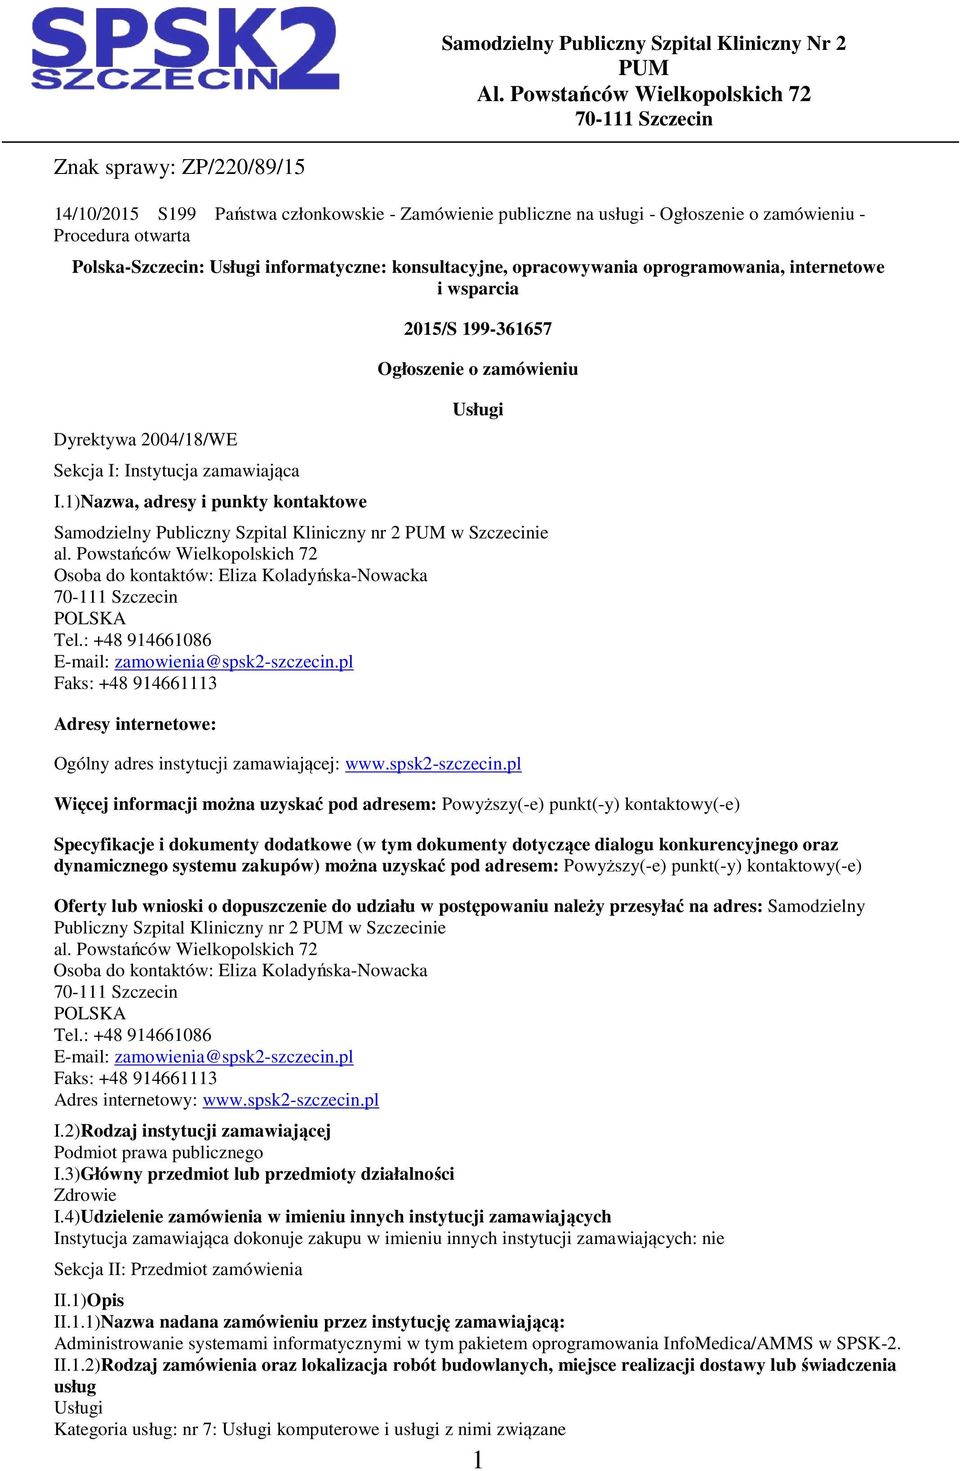 Polska-Szczecin: Usługi informatyczne: konsultacyjne, opracowywania oprogramowania, internetowe i wsparcia Dyrektywa 2004/18/WE Sekcja I: Instytucja zamawiająca I.